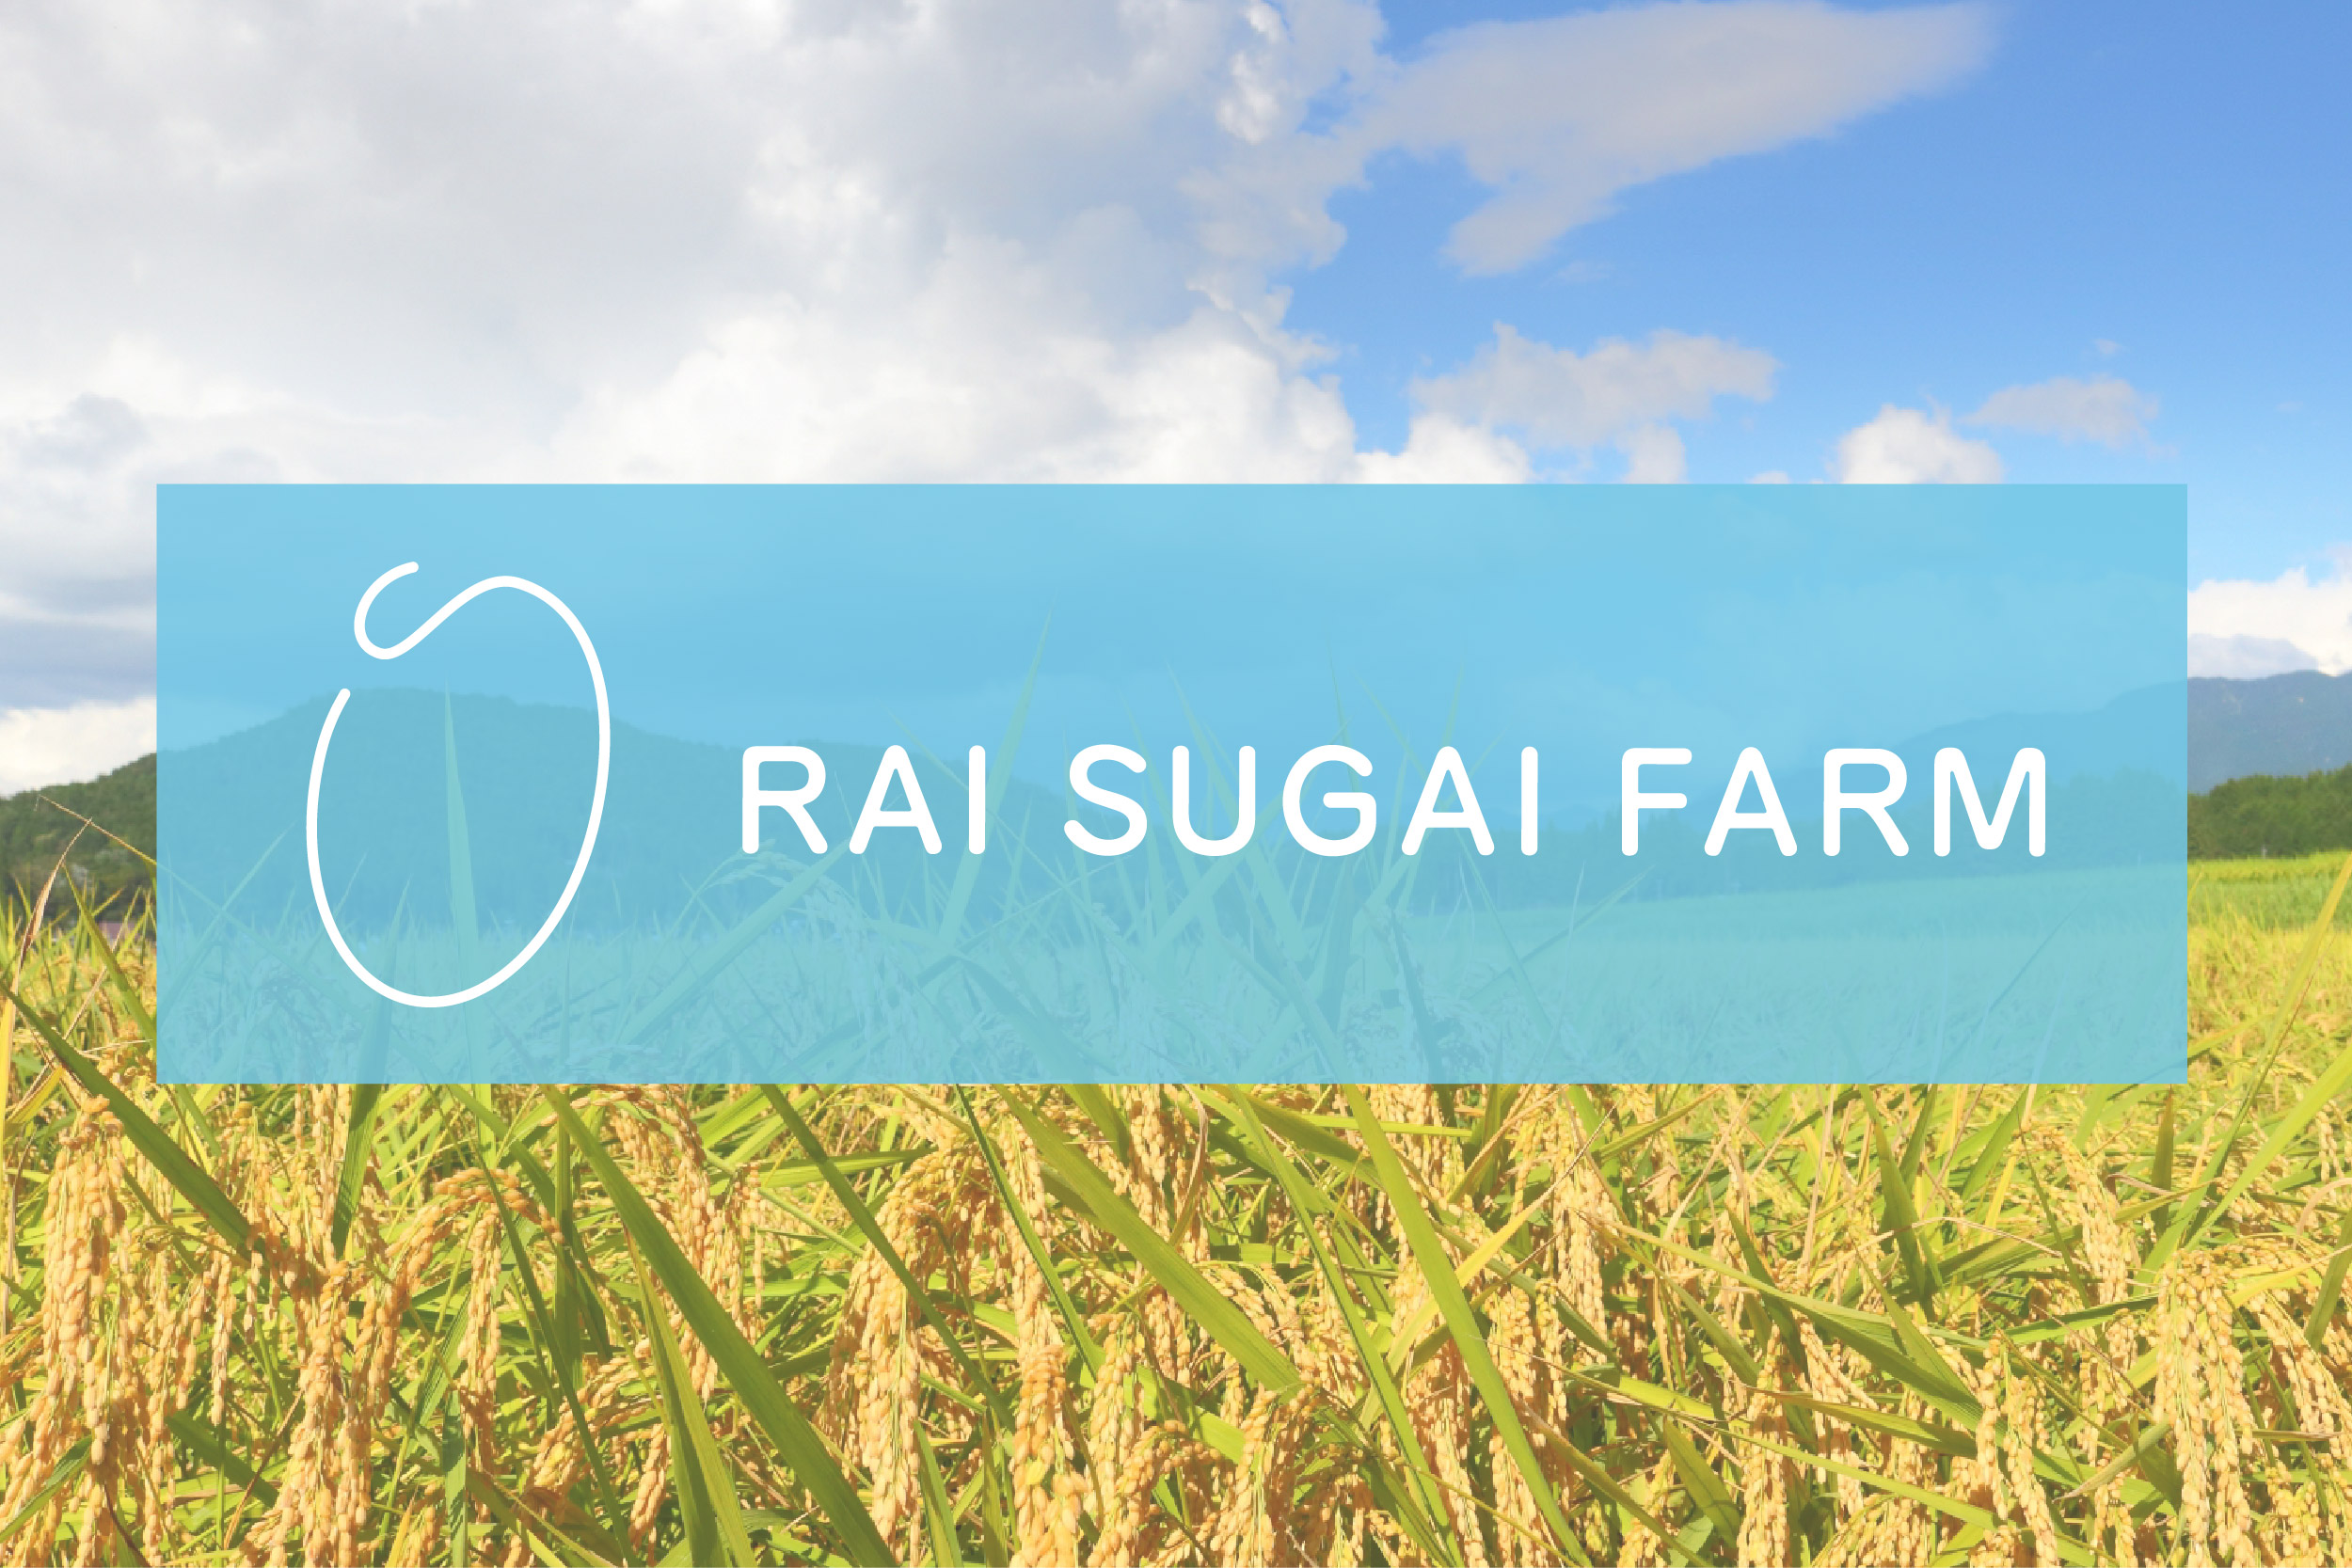 米屋『RAI SUGAI FARM』です。